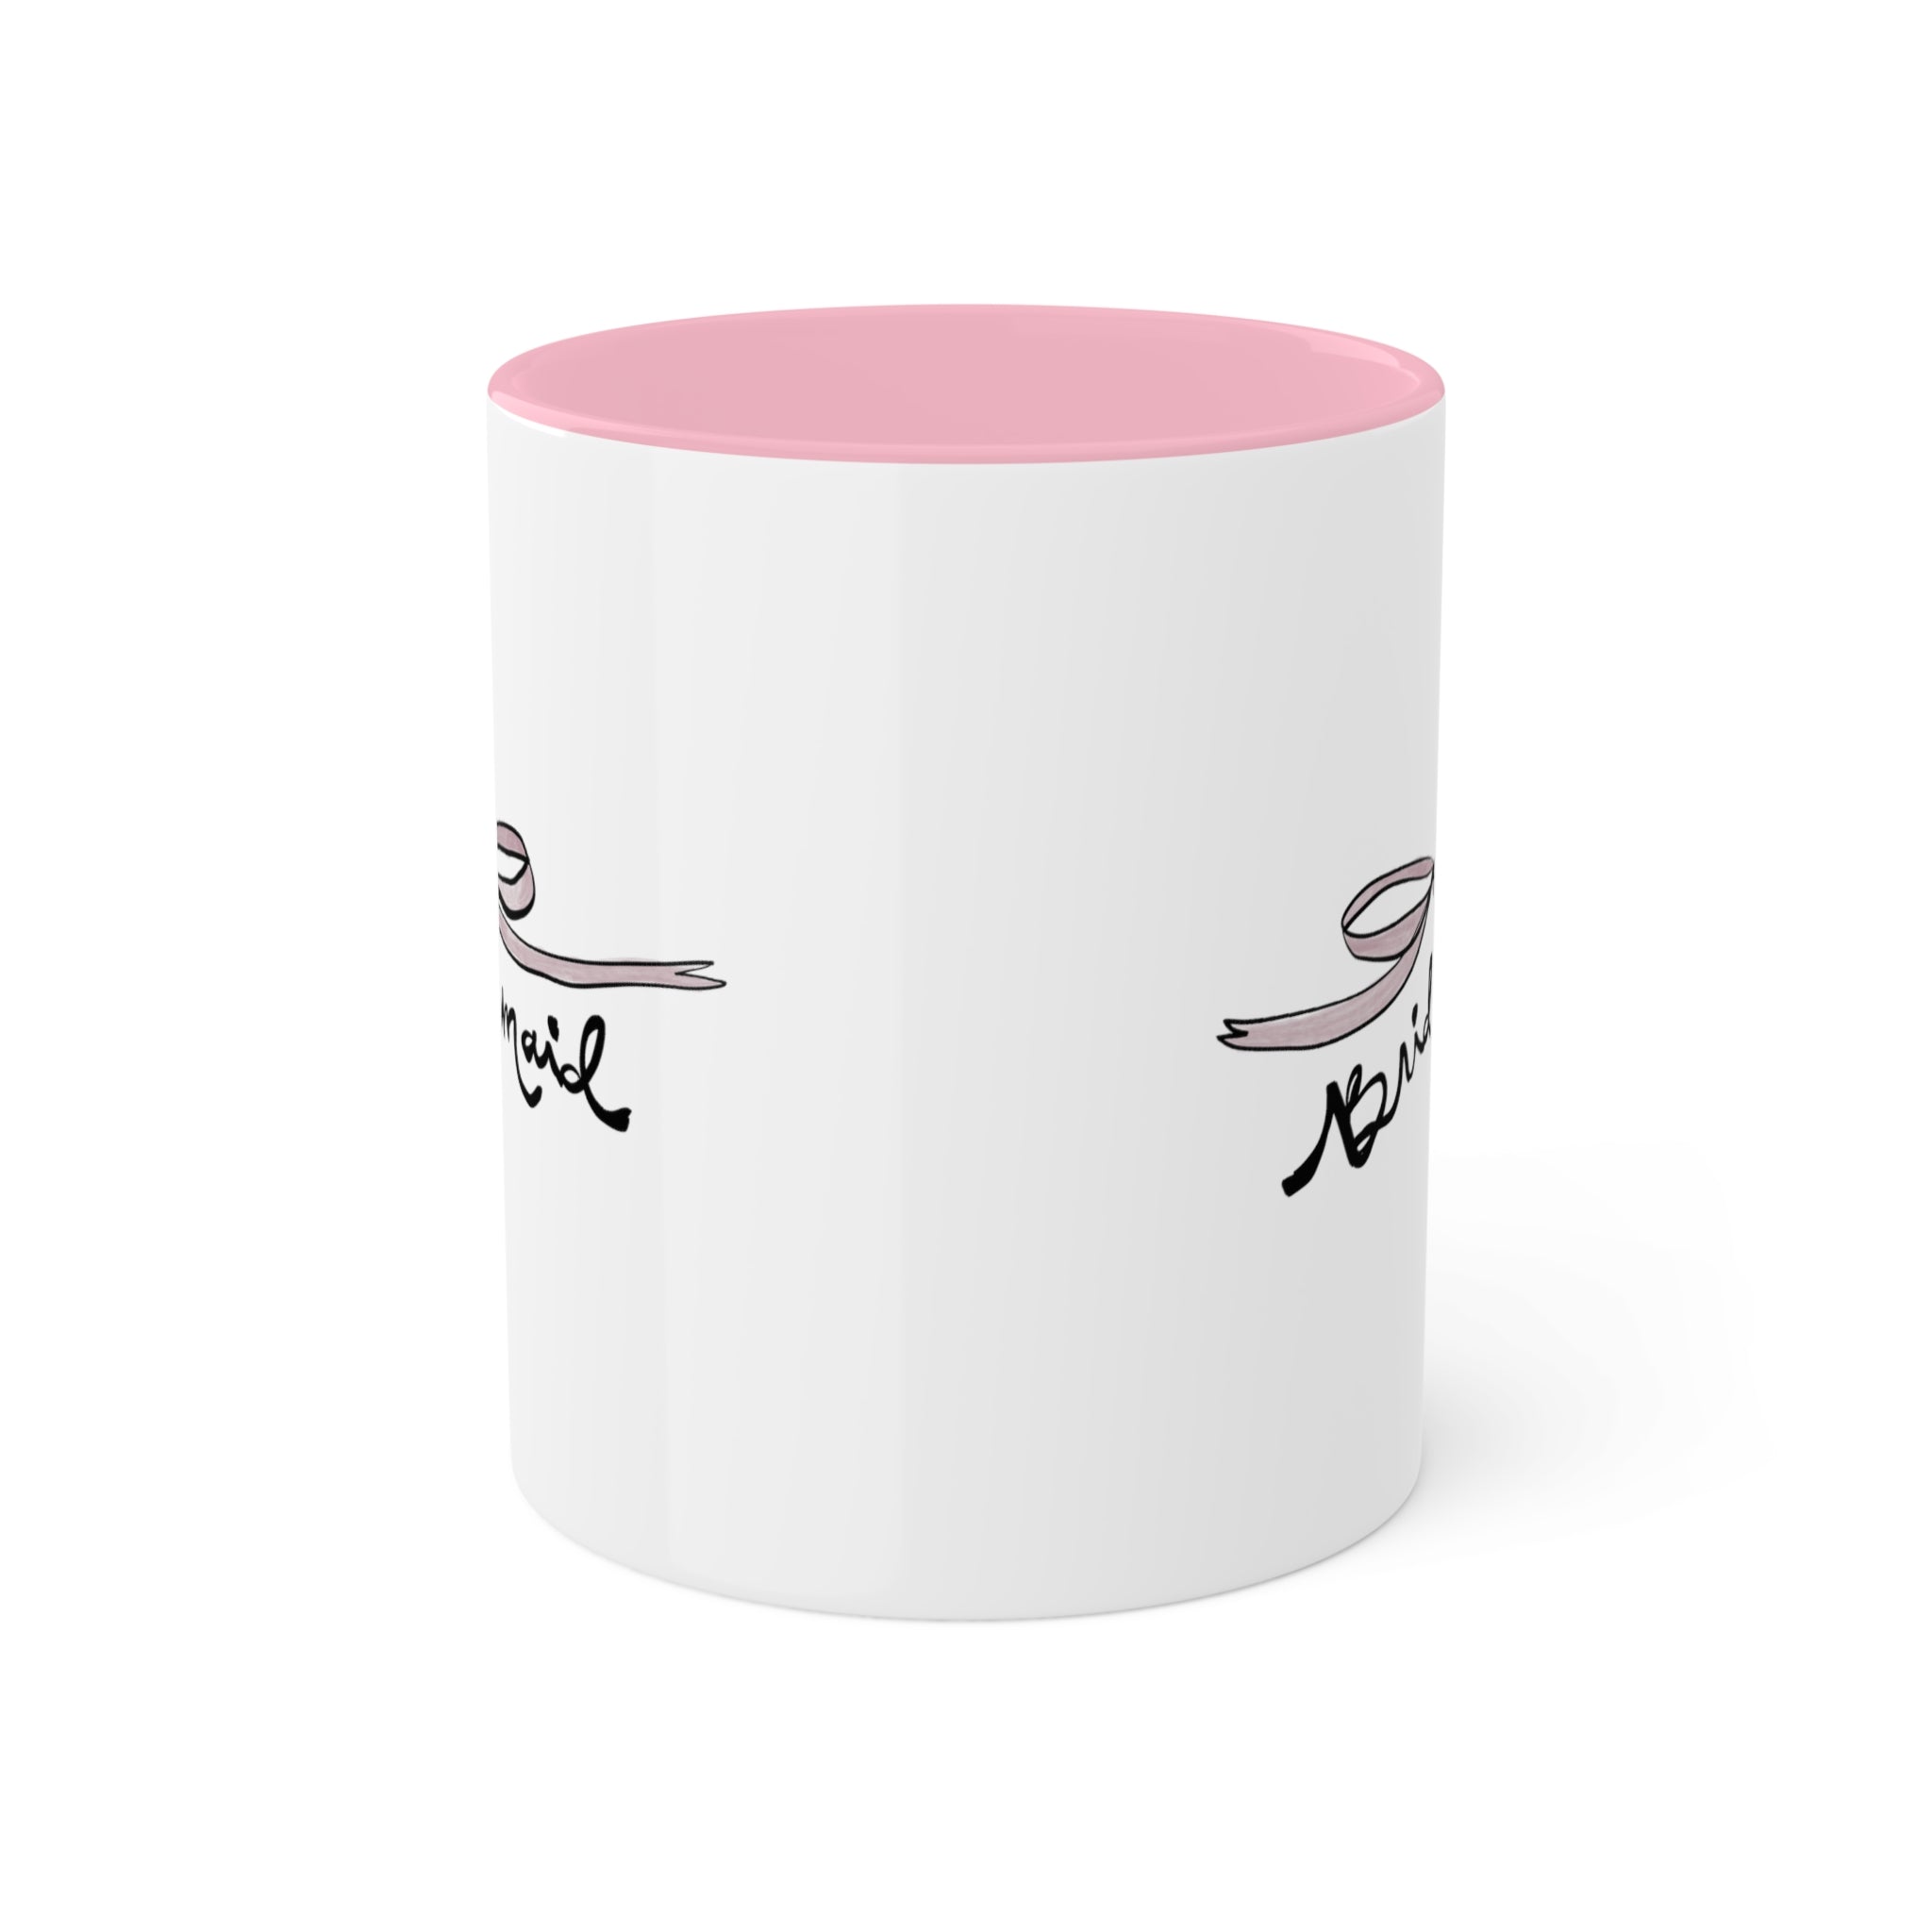 Bridesmaid Pink Mug